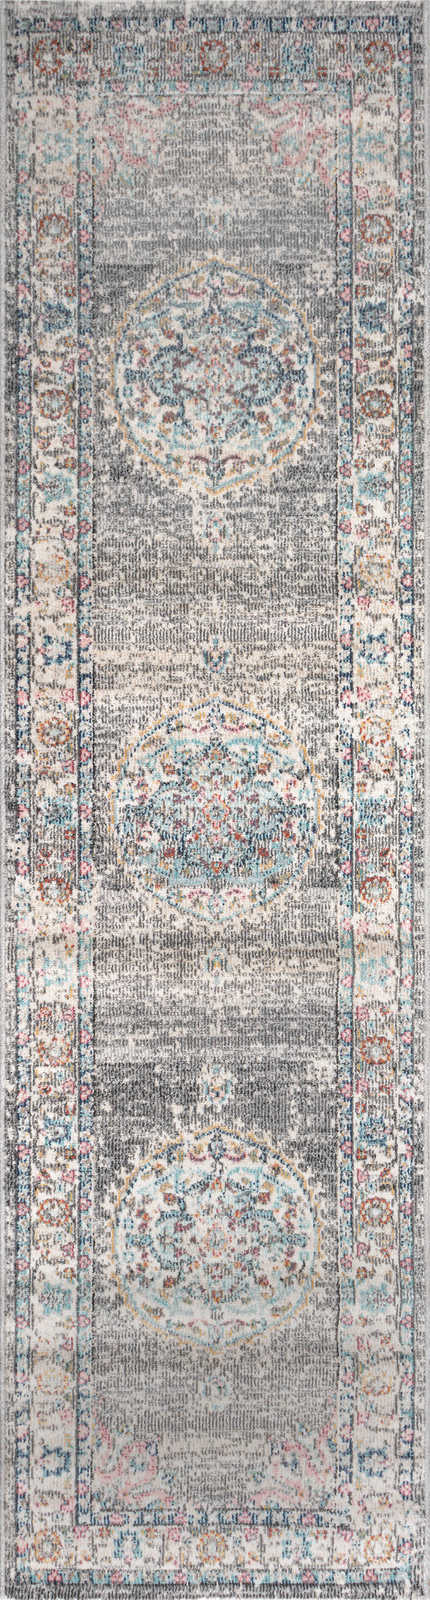             Grauer Teppich aus Flachgewebe als Läufer – 300 x 80 cm
        